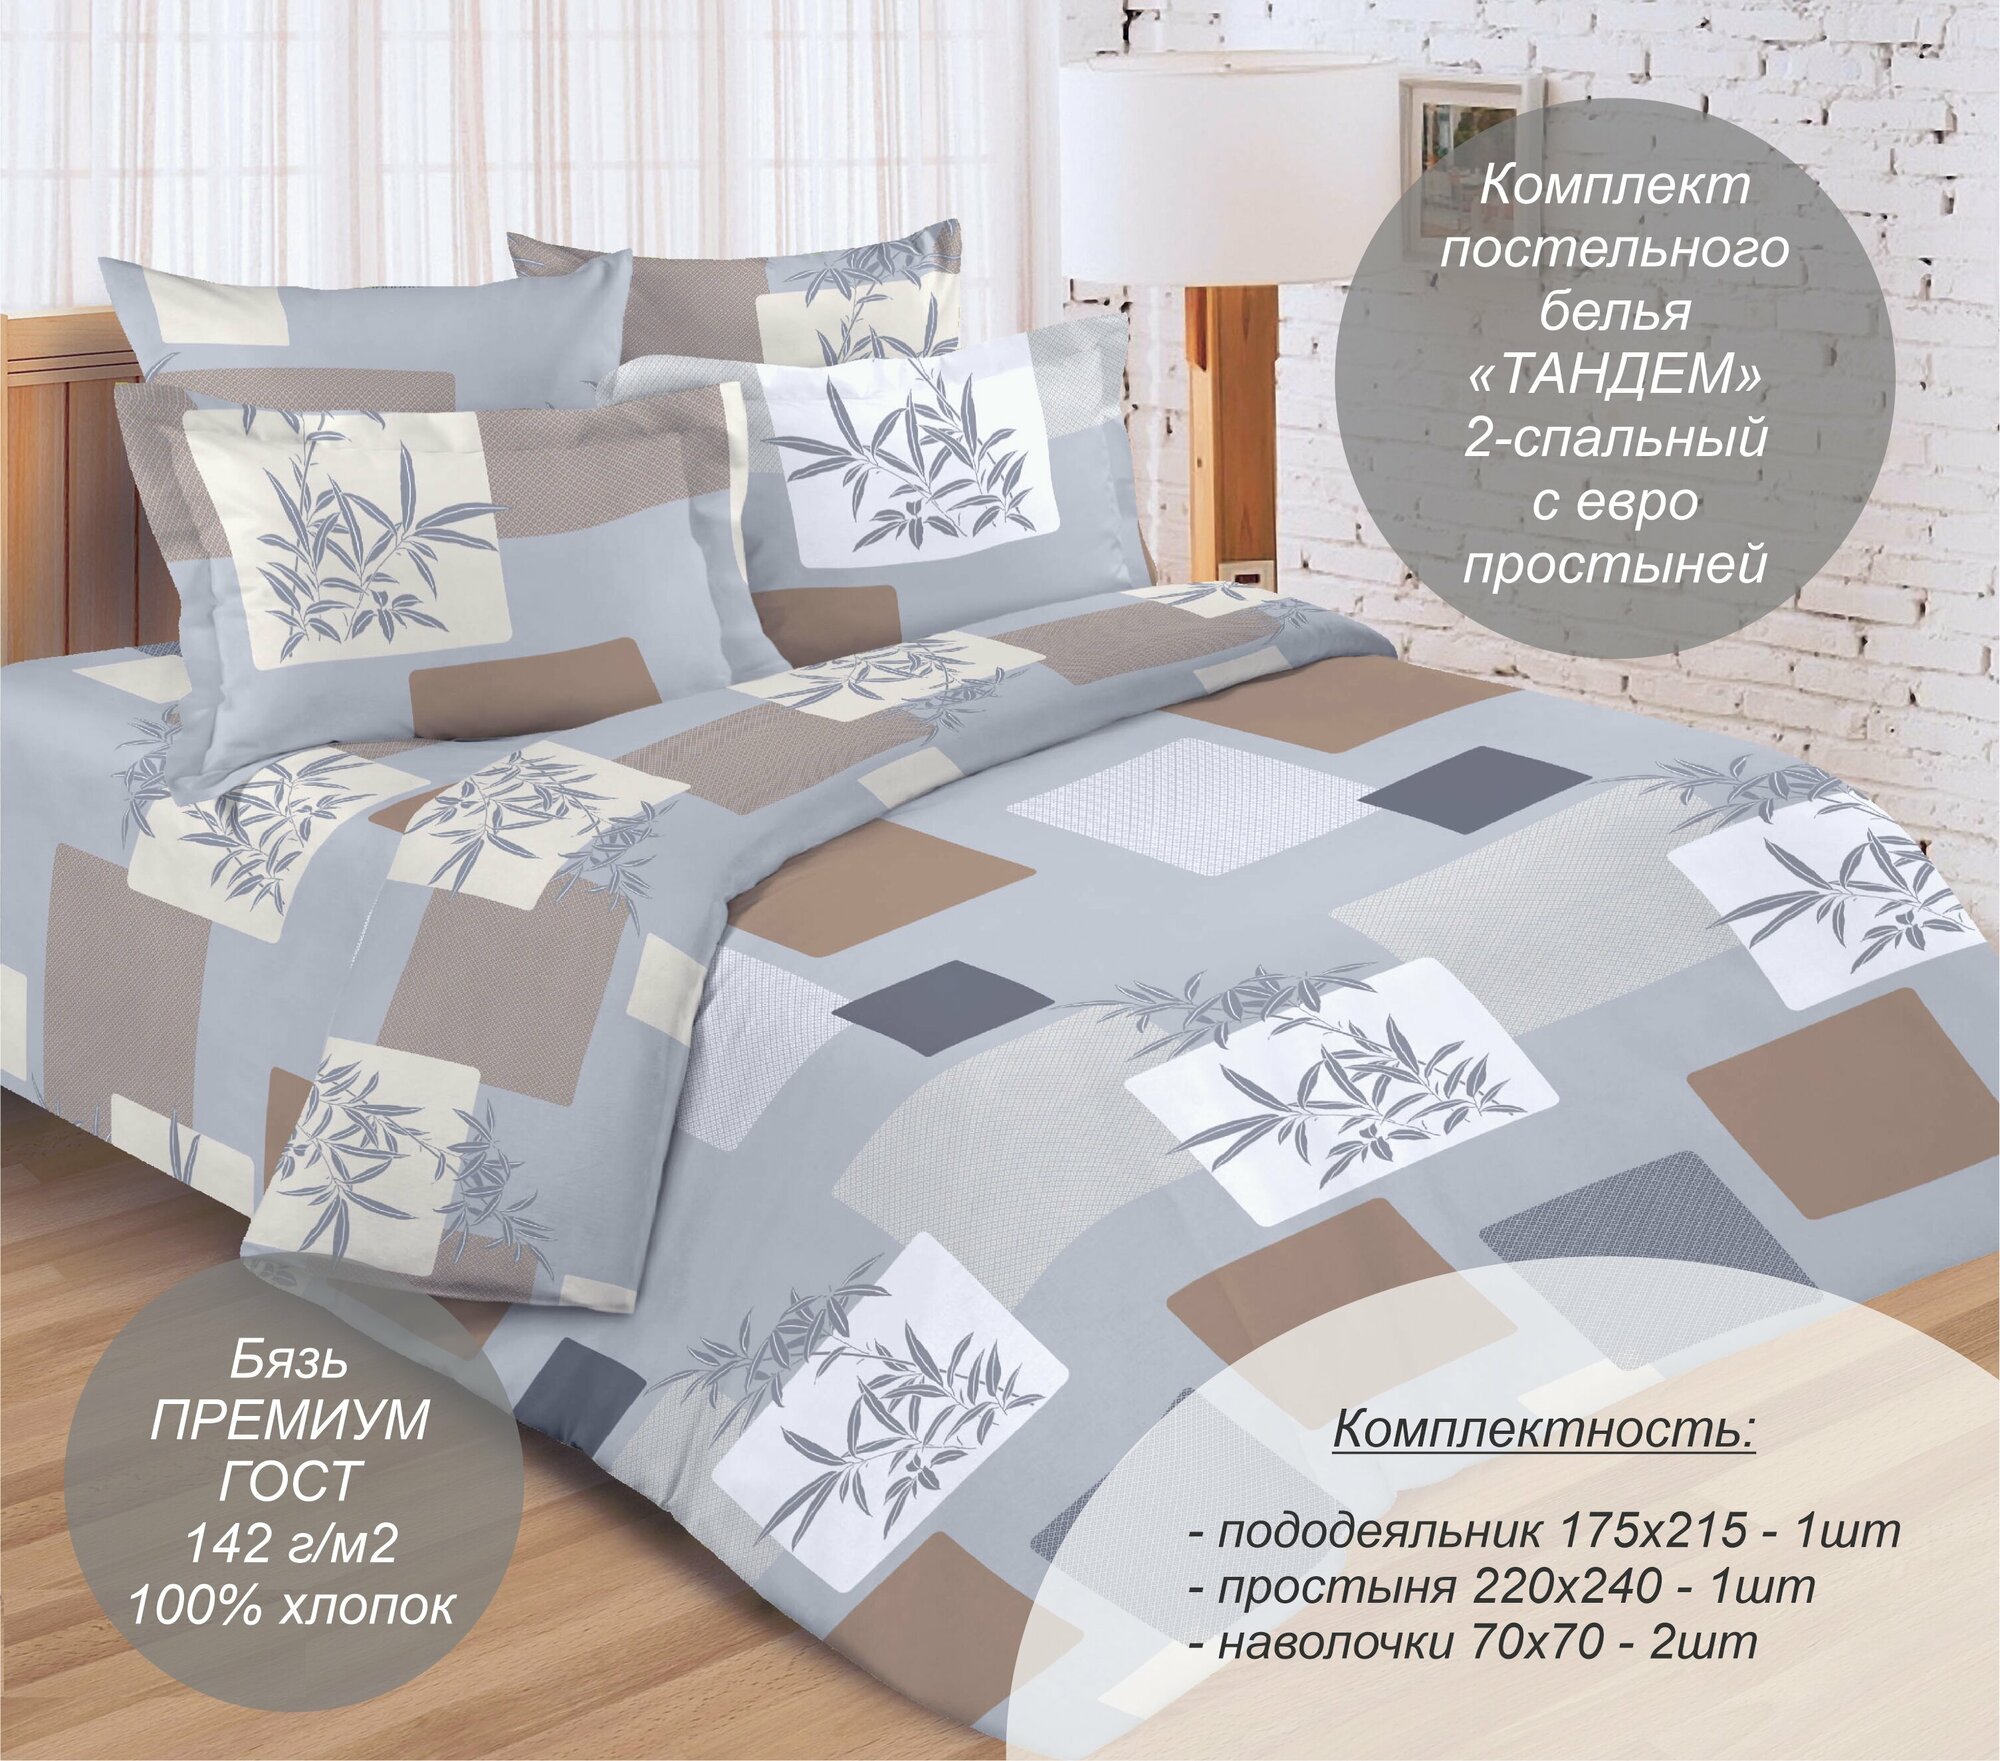 Комплект постельного белья "Тандем" 2-спальный с евро простыней (Бязь Премиум ГОСТ, 100% хлопок), наволочки 70х70